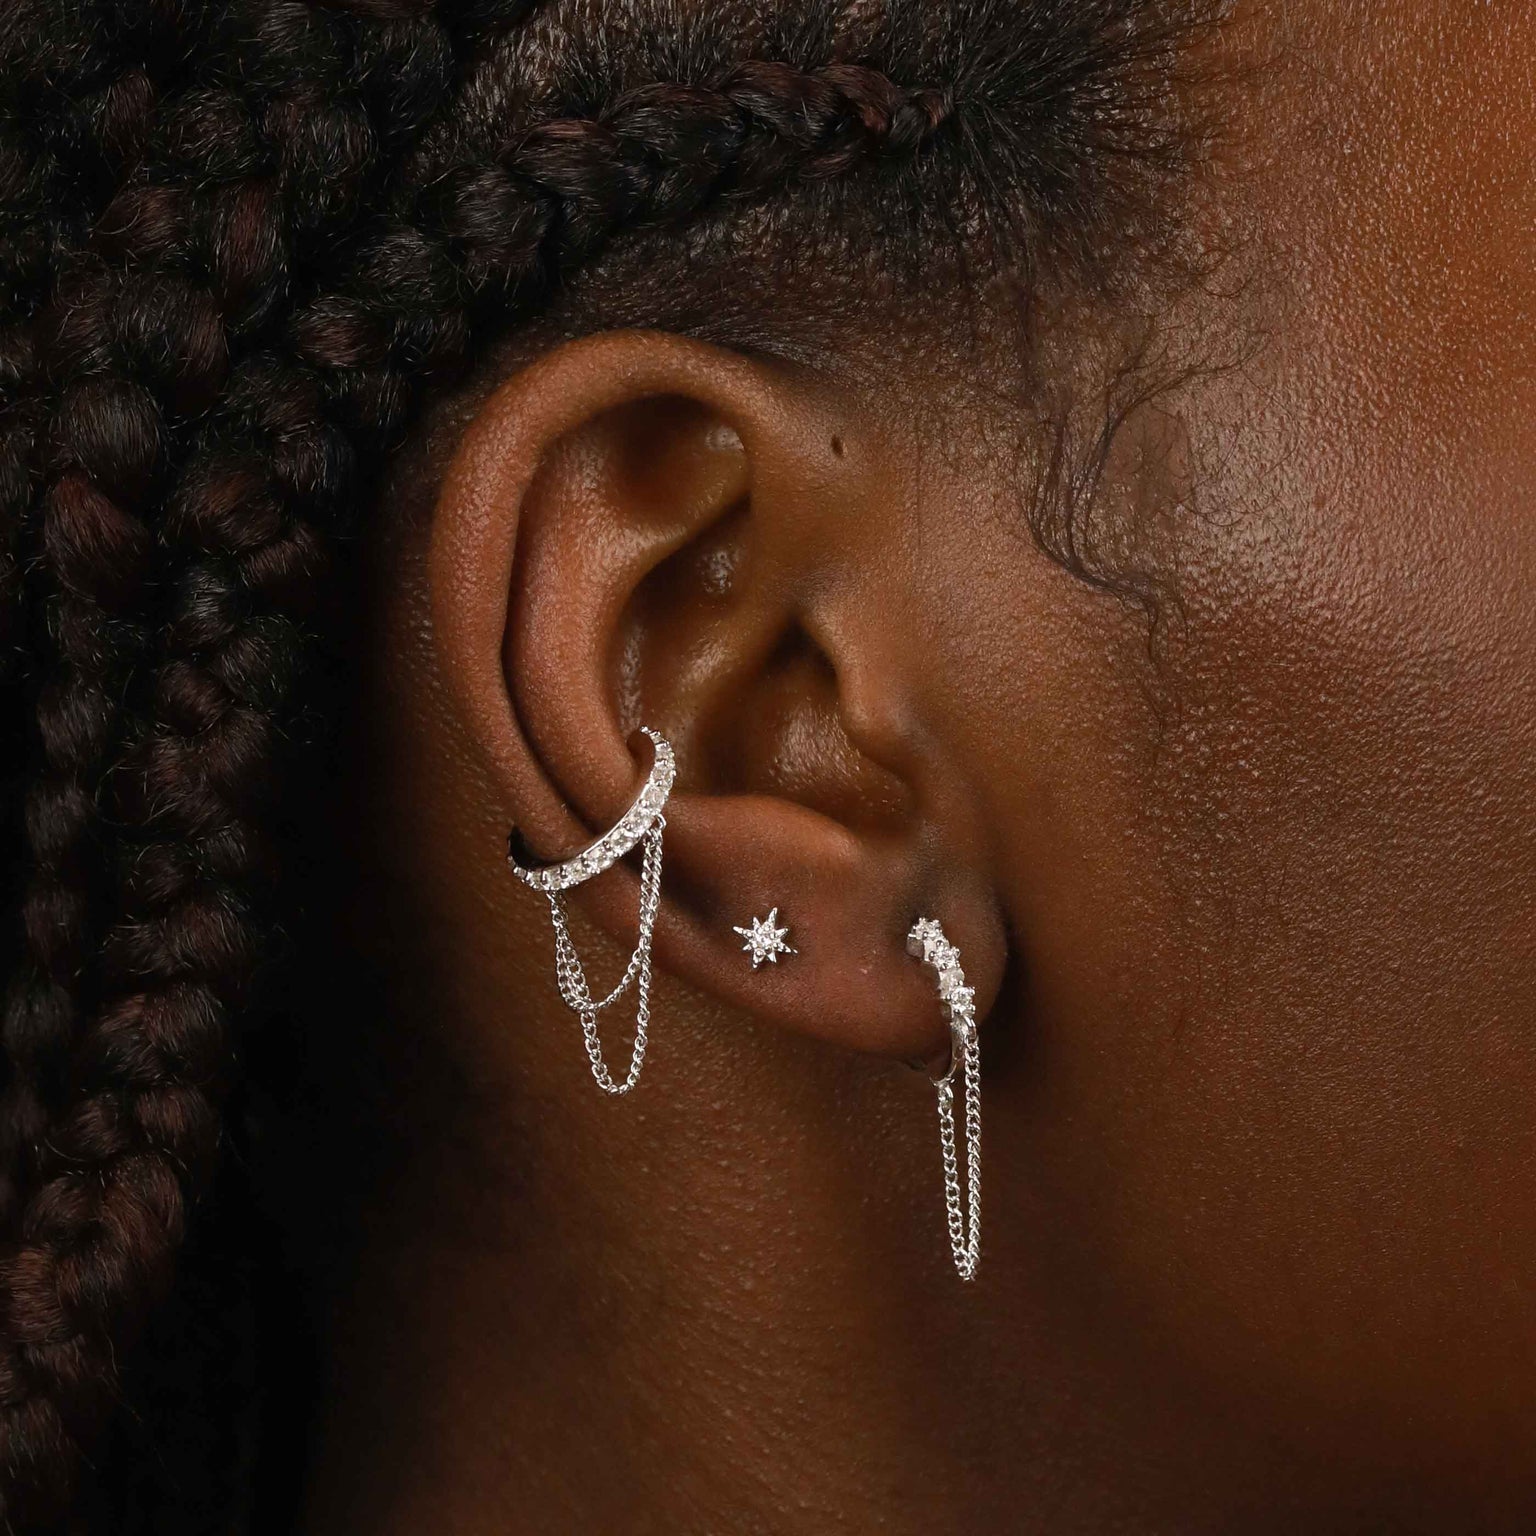 Twilight Star Stud Earrings in Silver